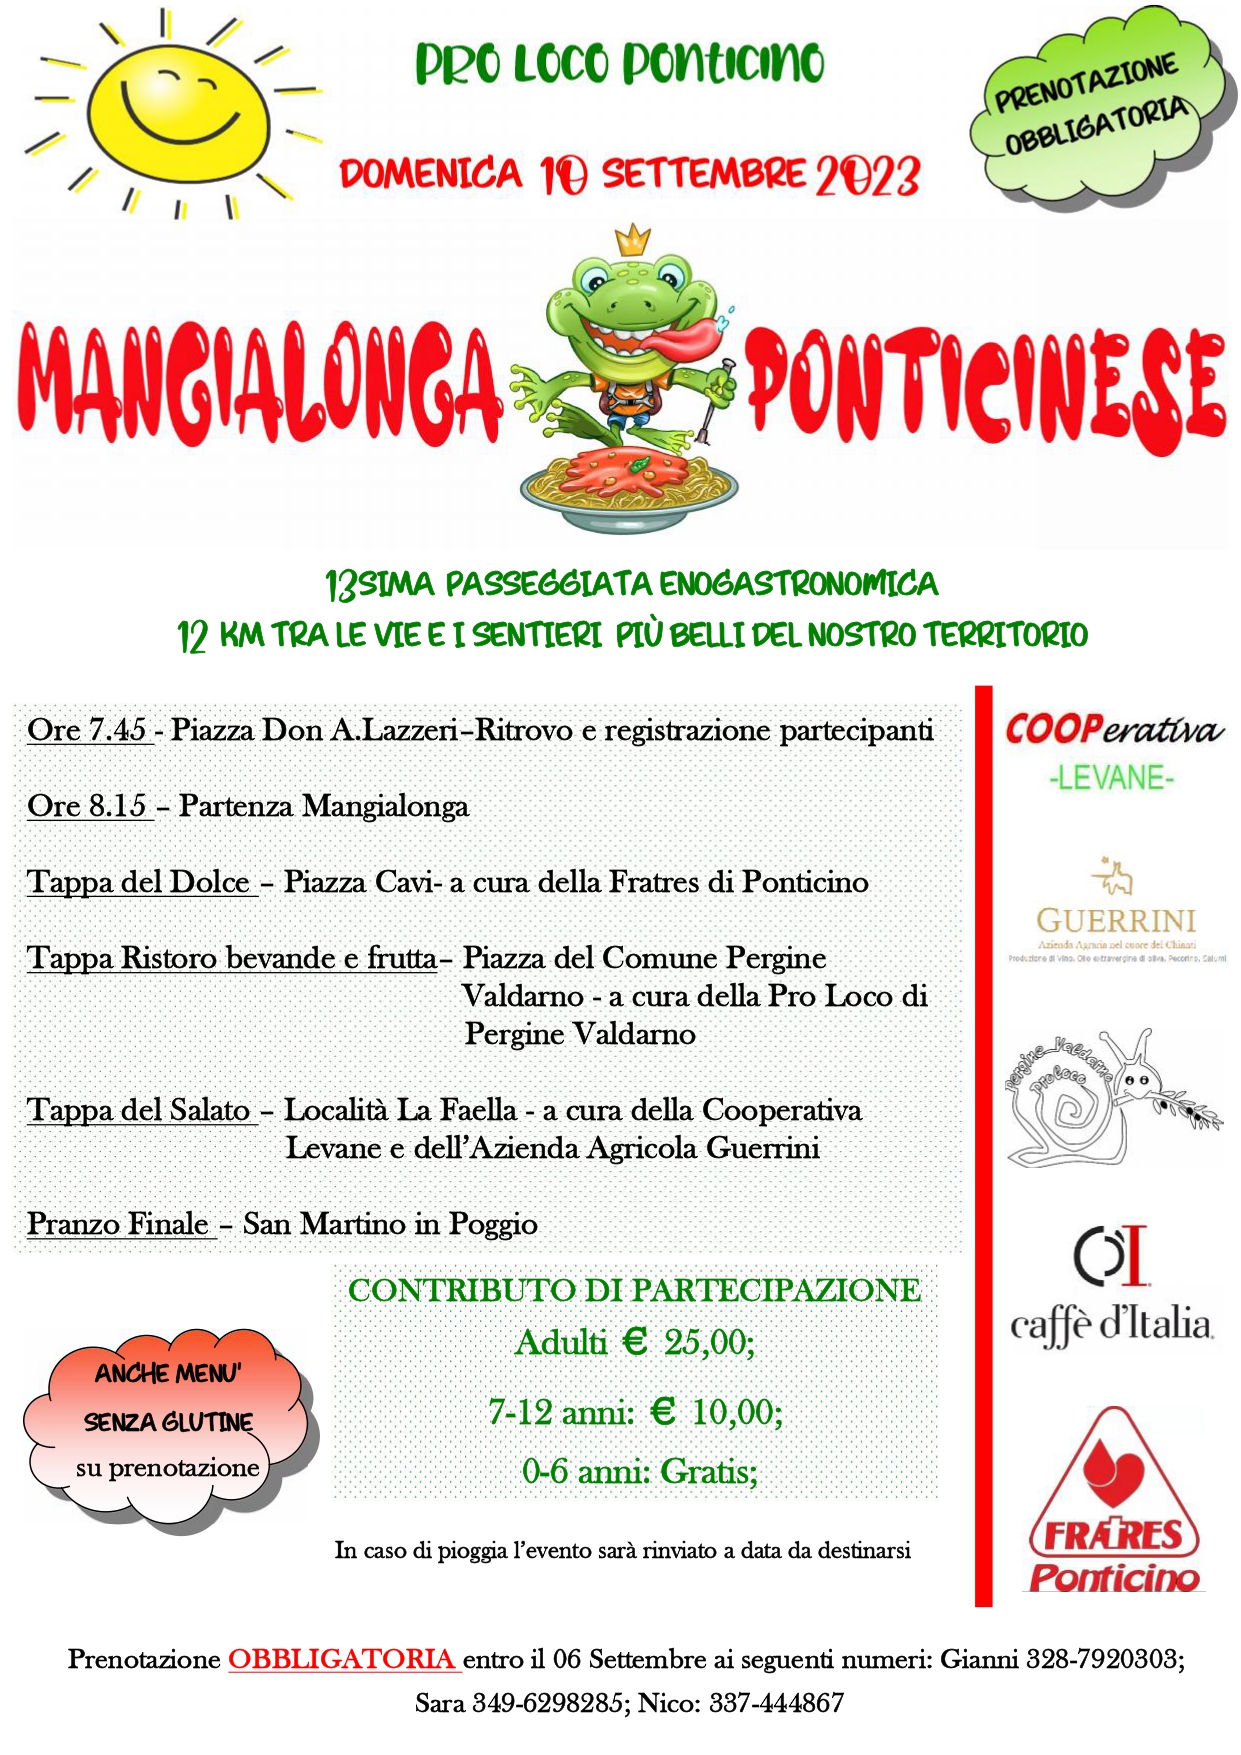 mangialonga-ponticinese